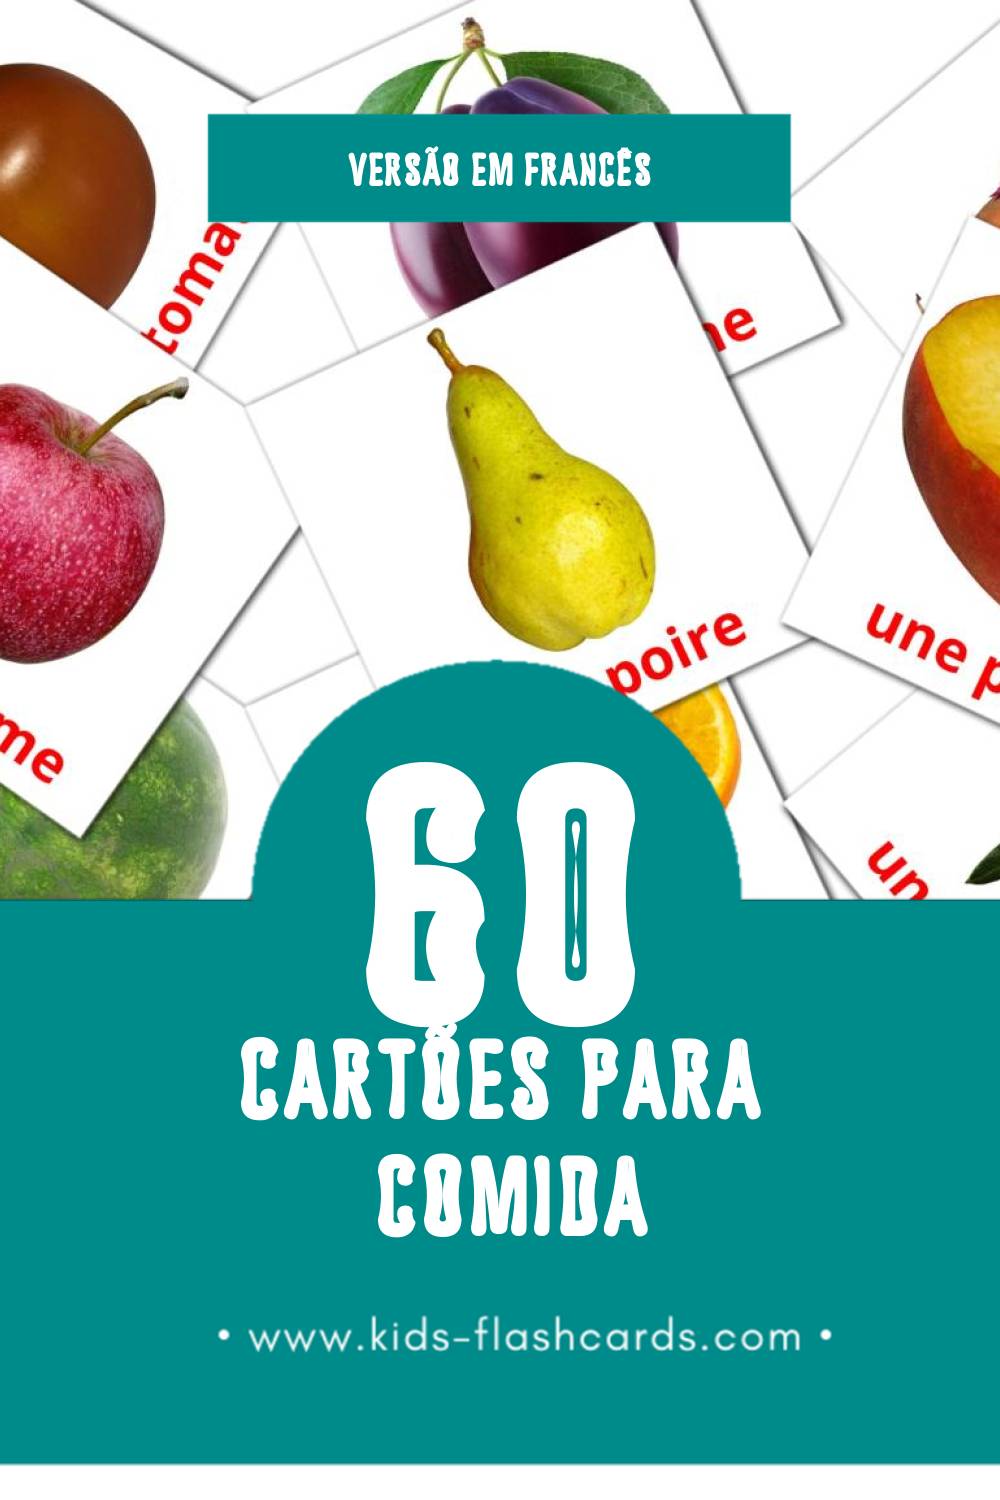 Flashcards de Nourriture Visuais para Toddlers (60 cartões em Francês)